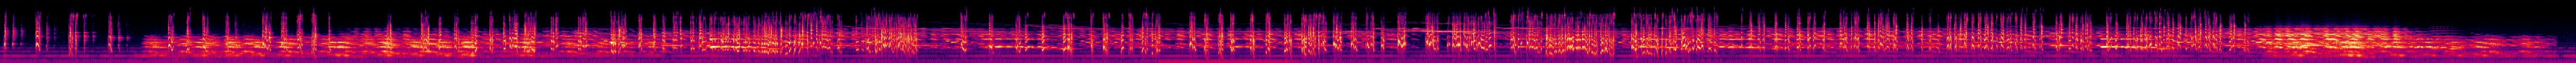 The Afterlife - 3 - Spectrogram.jpg